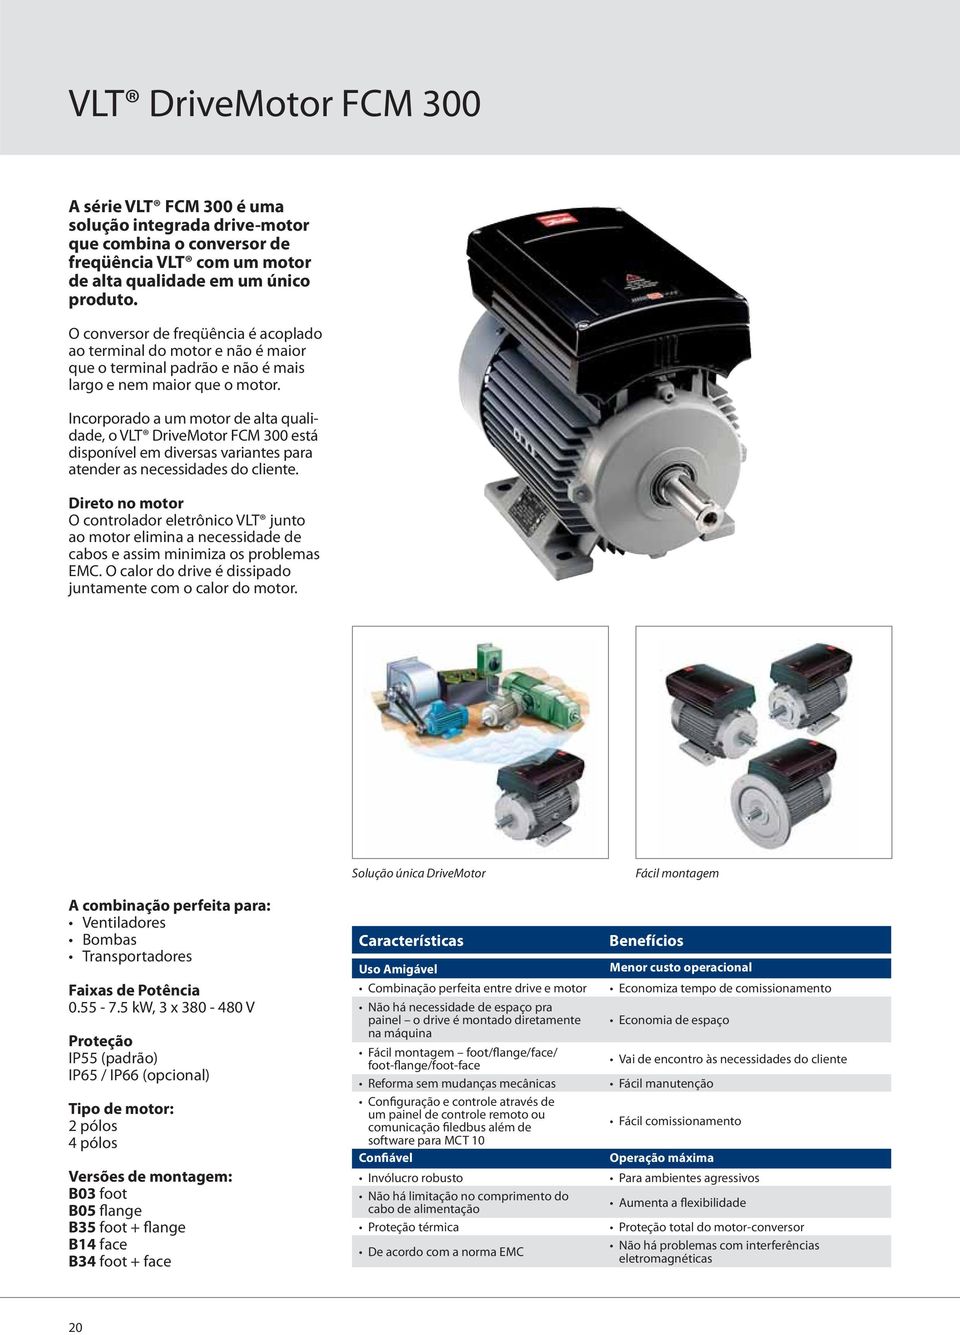 Incorporado a um motor de alta qualidade, o VLT DriveMotor FCM 300 está disponível em diversas variantes para atender as necessidades do cliente.